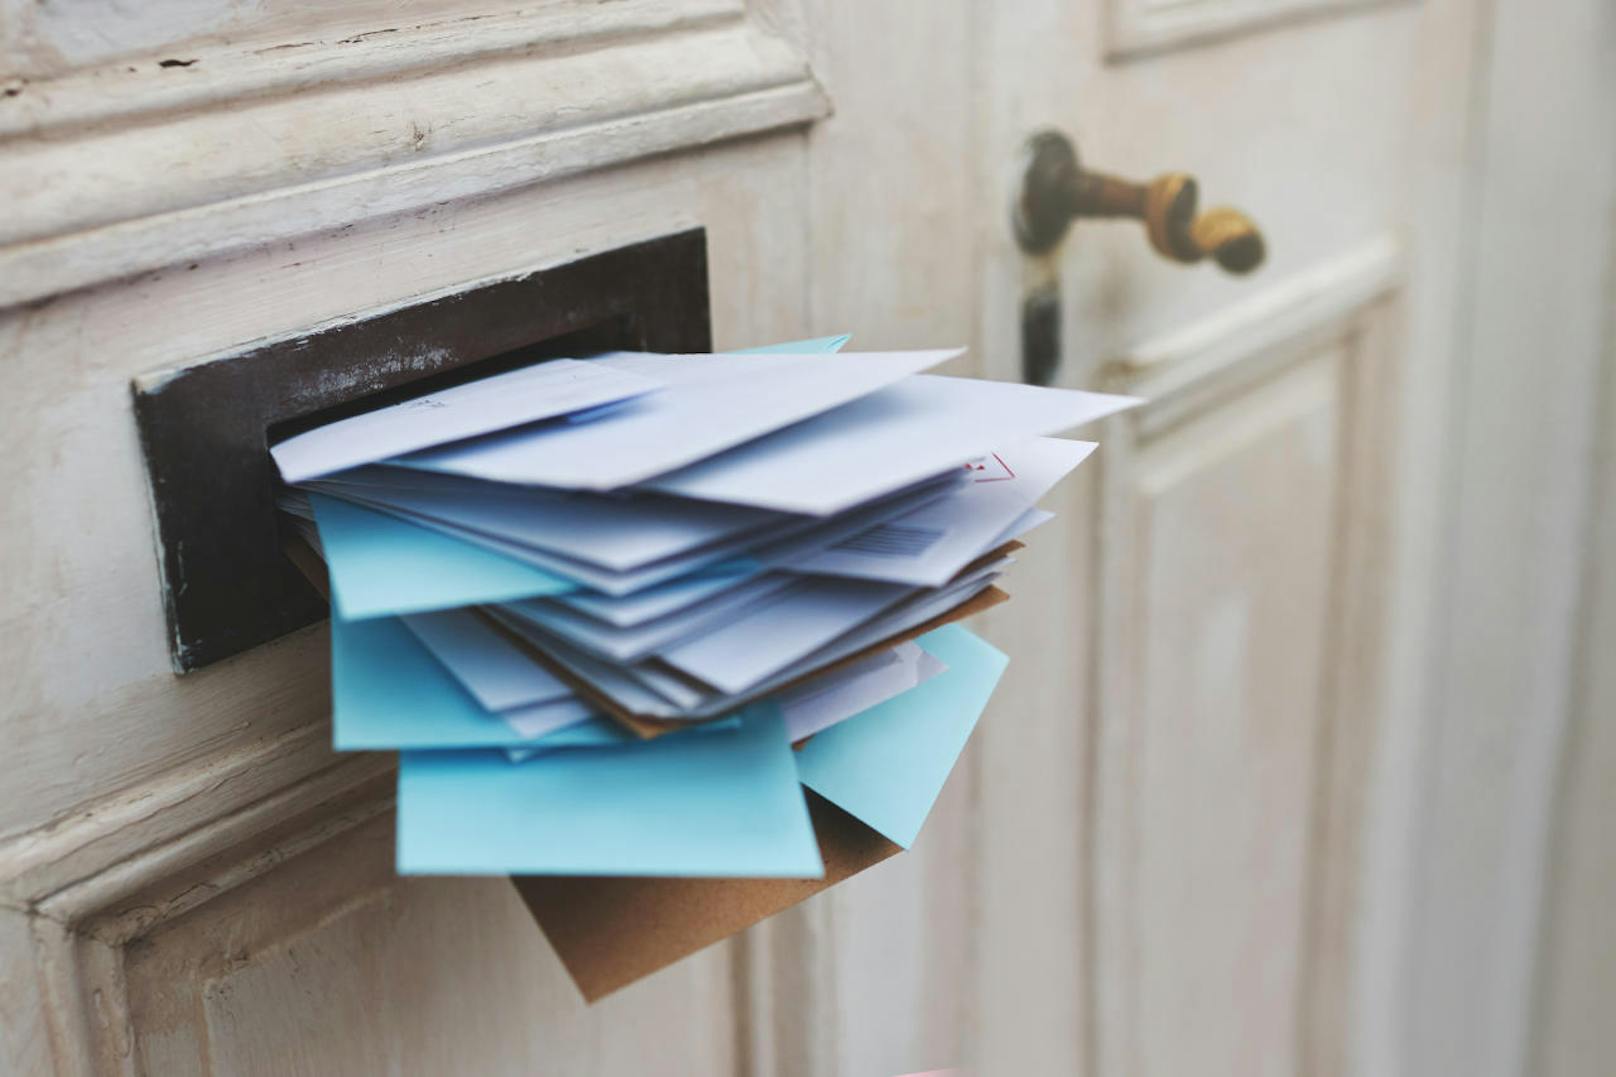 <b>Punk 9: Post.</b> Damit der Briefkasten nicht überquillt, kann man die Post zurückhalten lassen. Oder Sie bitten eine Vertrauensperson, die Post einzusammeln. Damit diese Person auch eingeschriebene Briefe abholen kann, braucht es eine Vollmacht - die lohnt sich vor allem bei längeren Abwesenheiten.